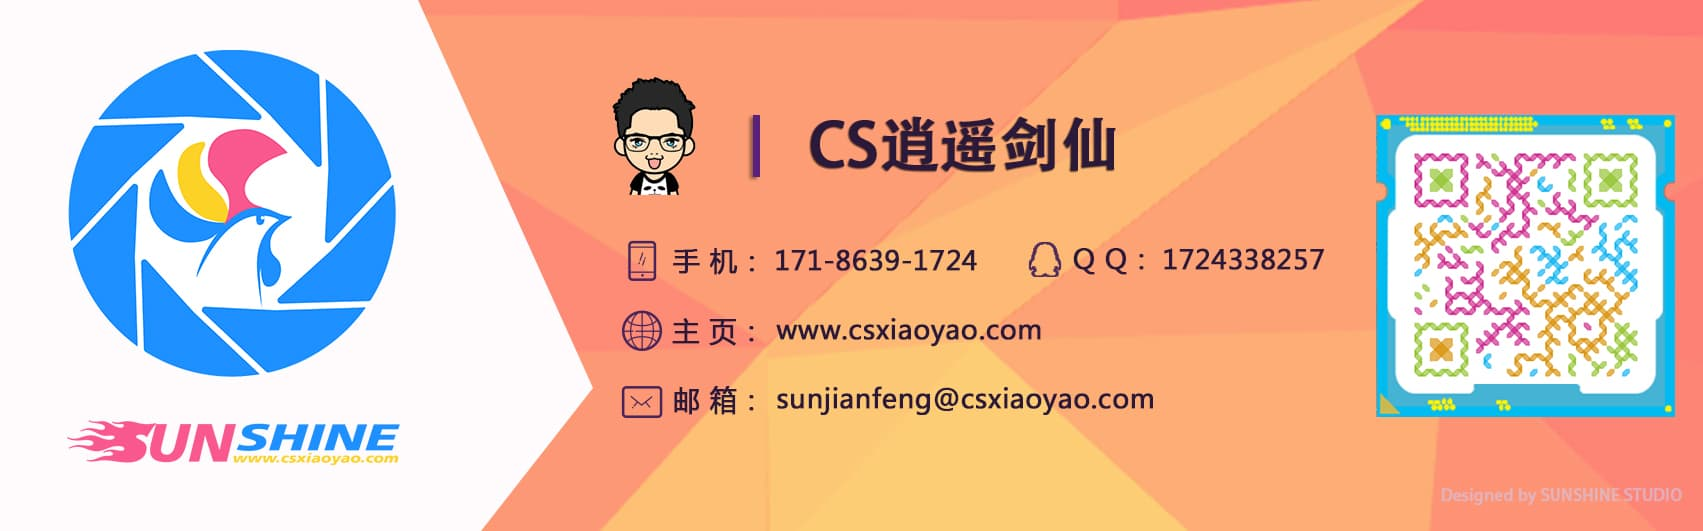 www.csxiaoyao.com